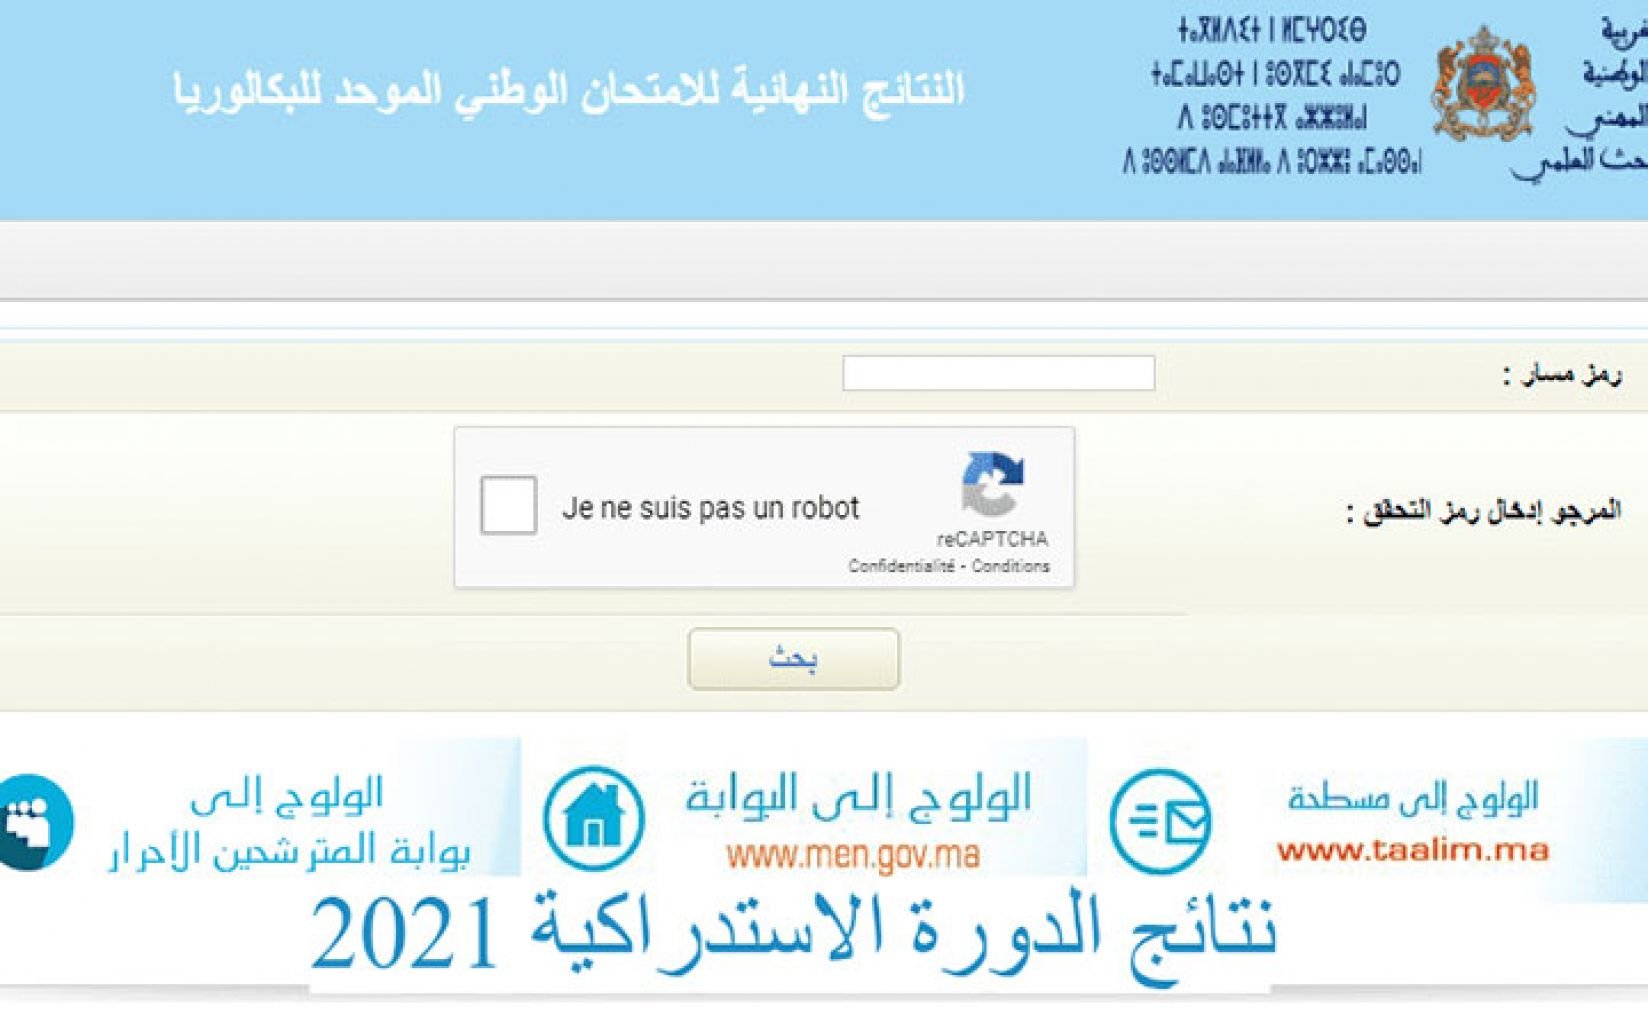 نتائج الاستدراكية 2021 المغرب الآن لجميع الطلاب عبر موقع bac.men.gov.ma